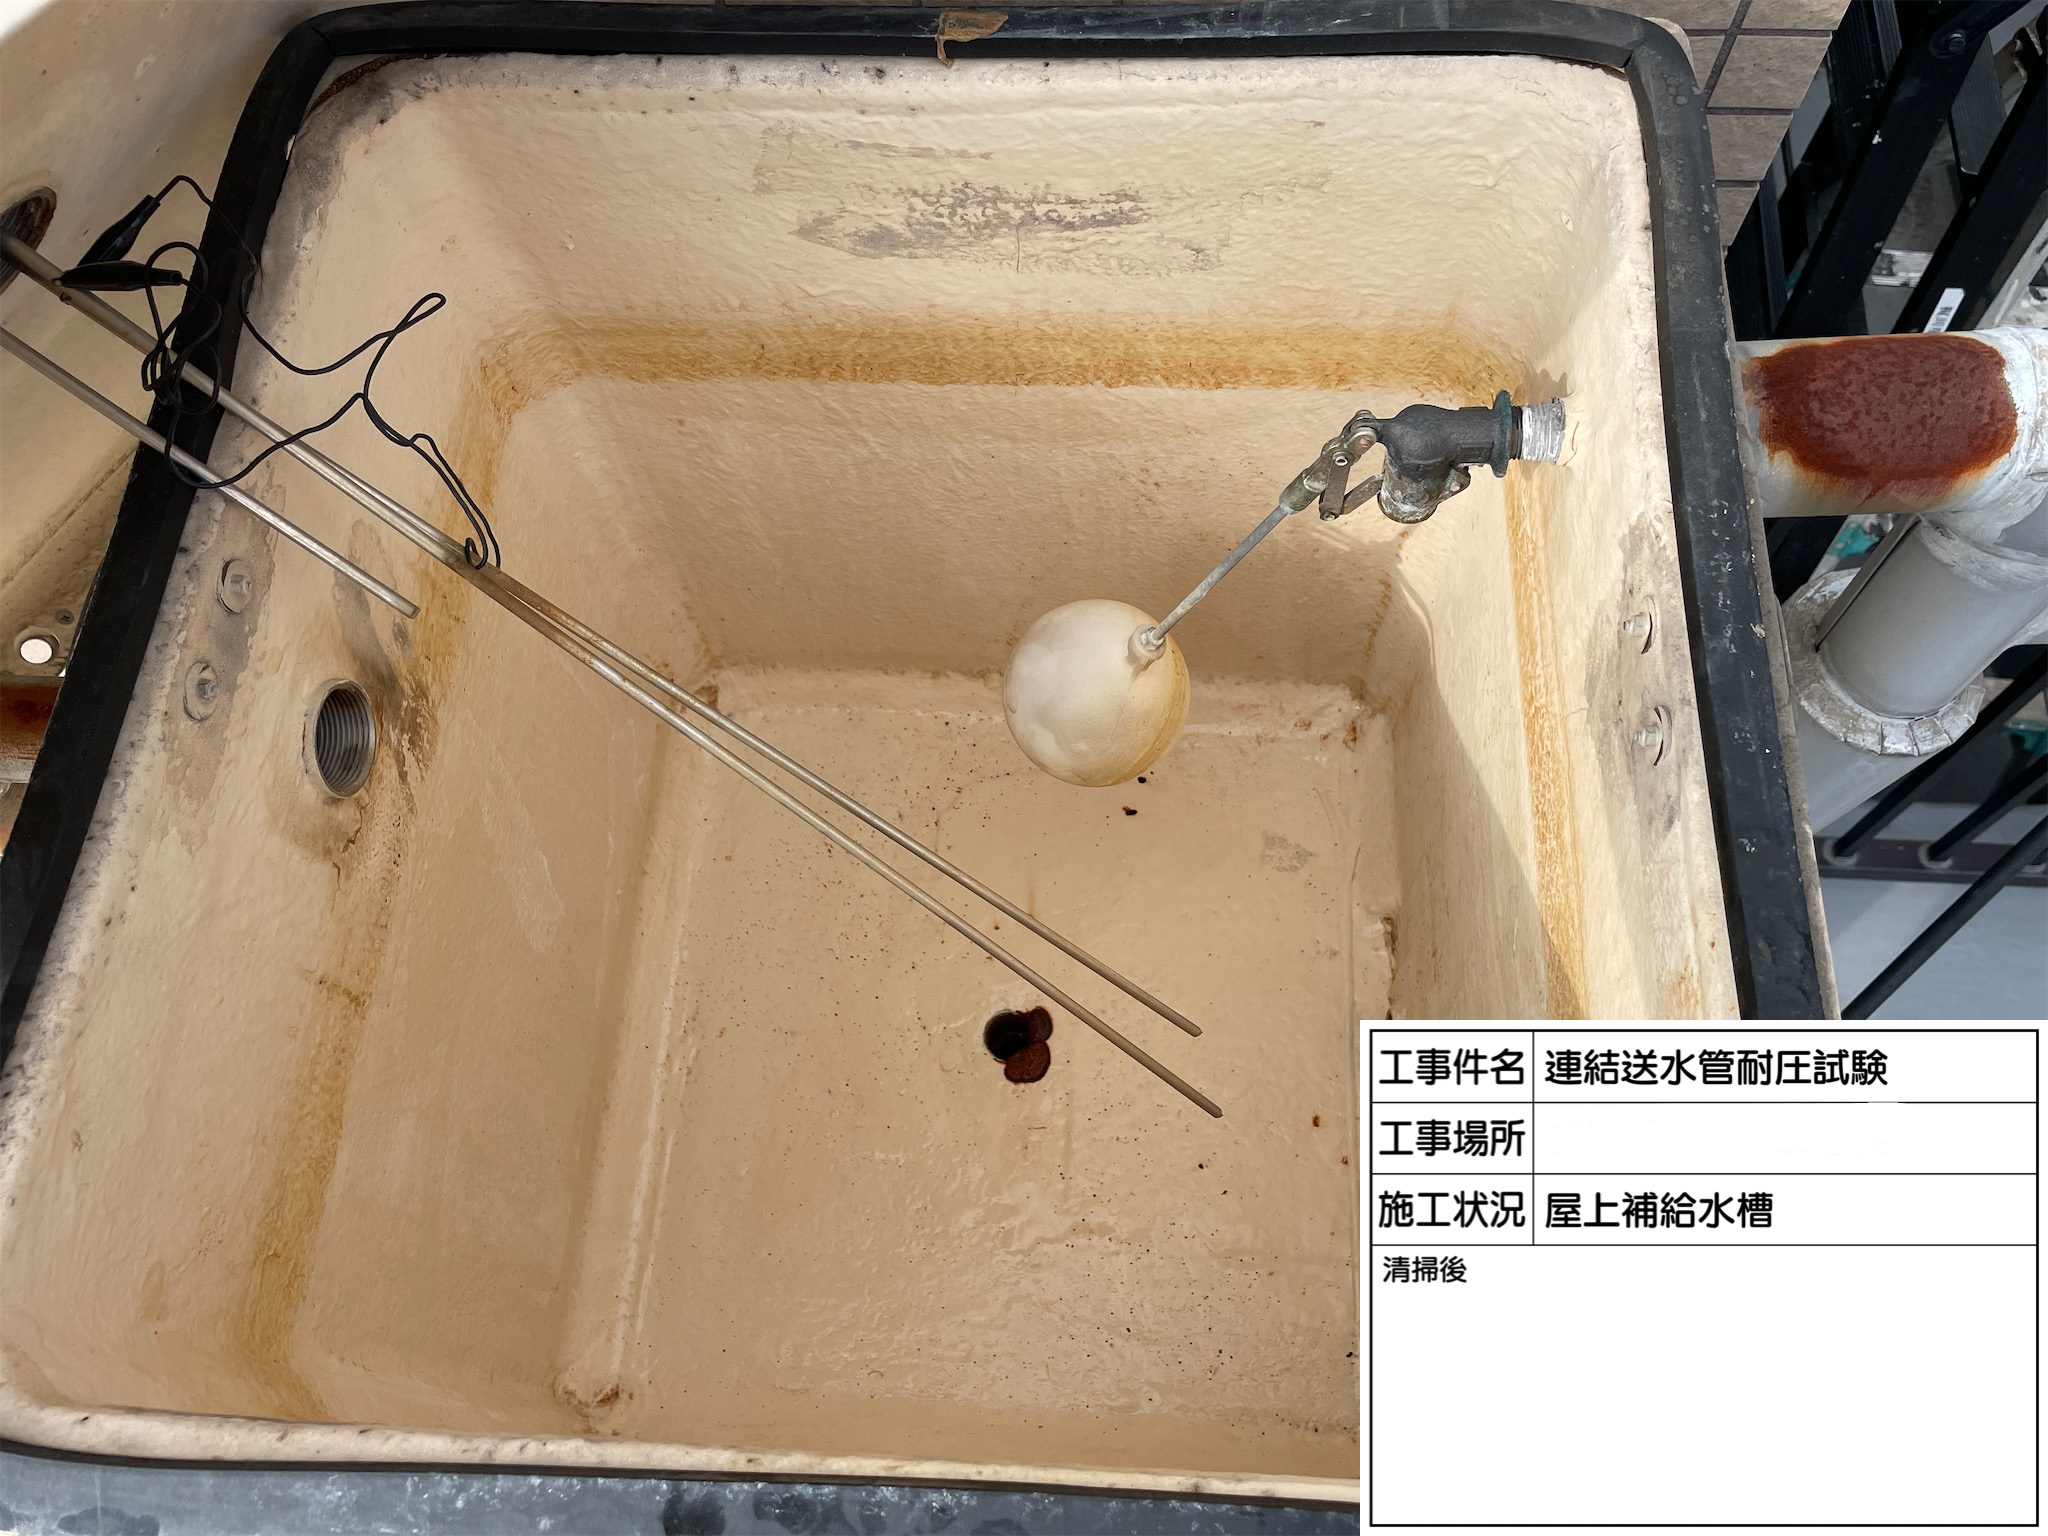 【広島市中区】マンションP様 連結送水管耐圧試験